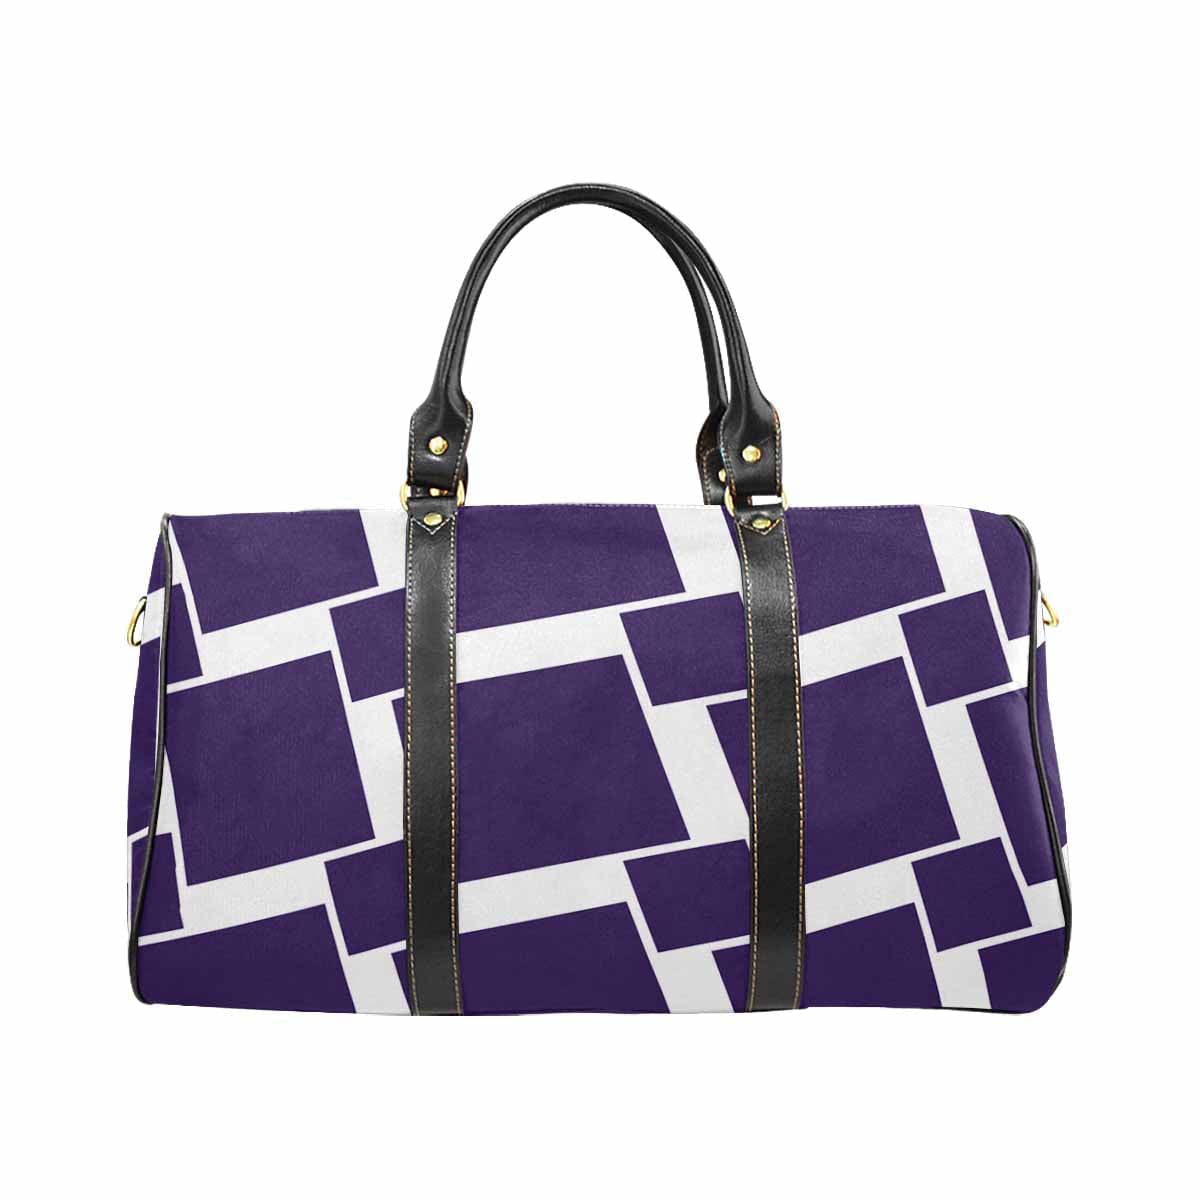 Travel Bag Adjustable Shoulder Strap Carry On Bag Dark Purple - Bags | Travel